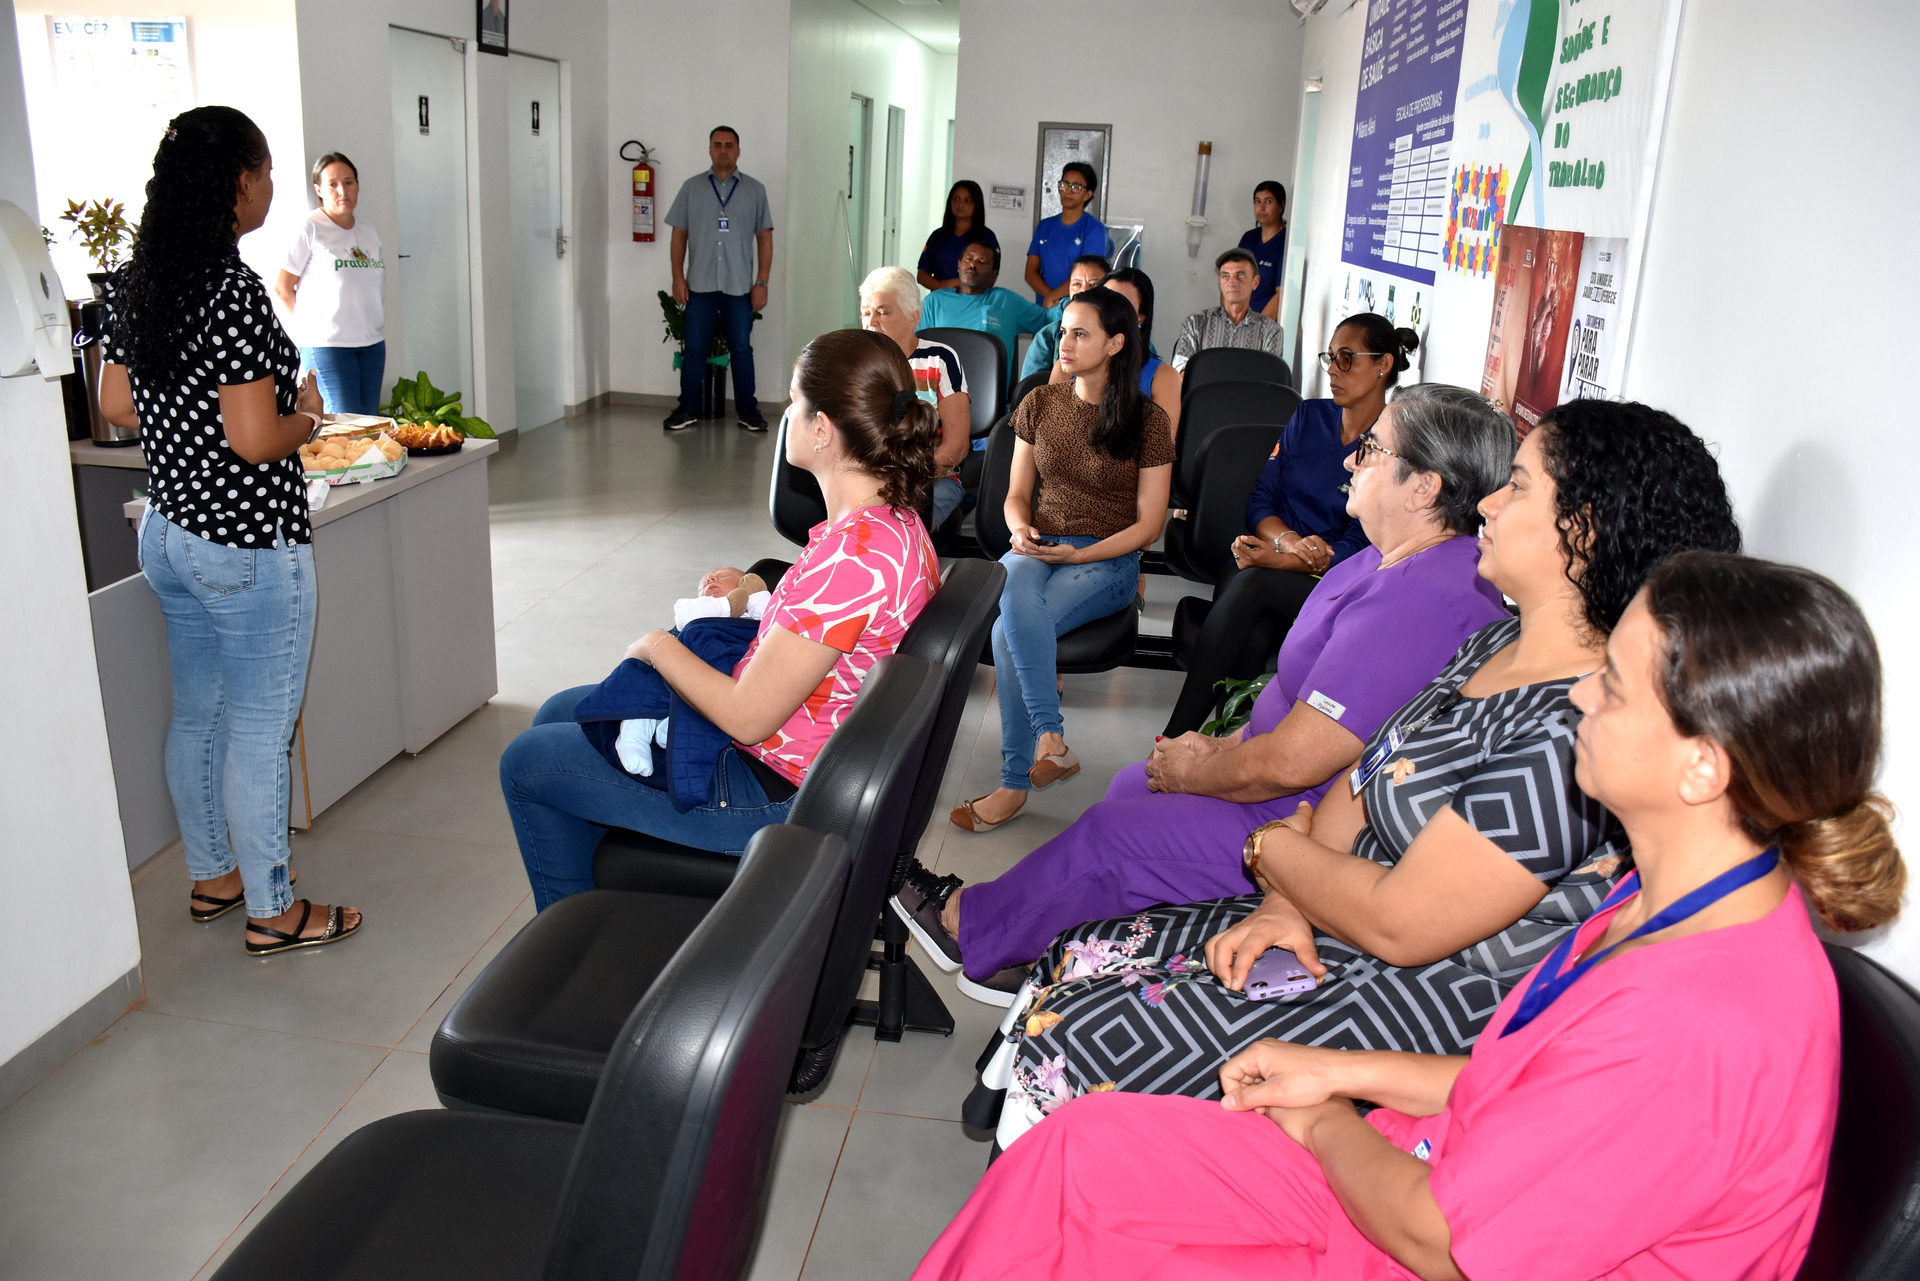 Autismo é tema de salas de espera promovidas pela Secretaria de Saúde de Gaúcha do Norte